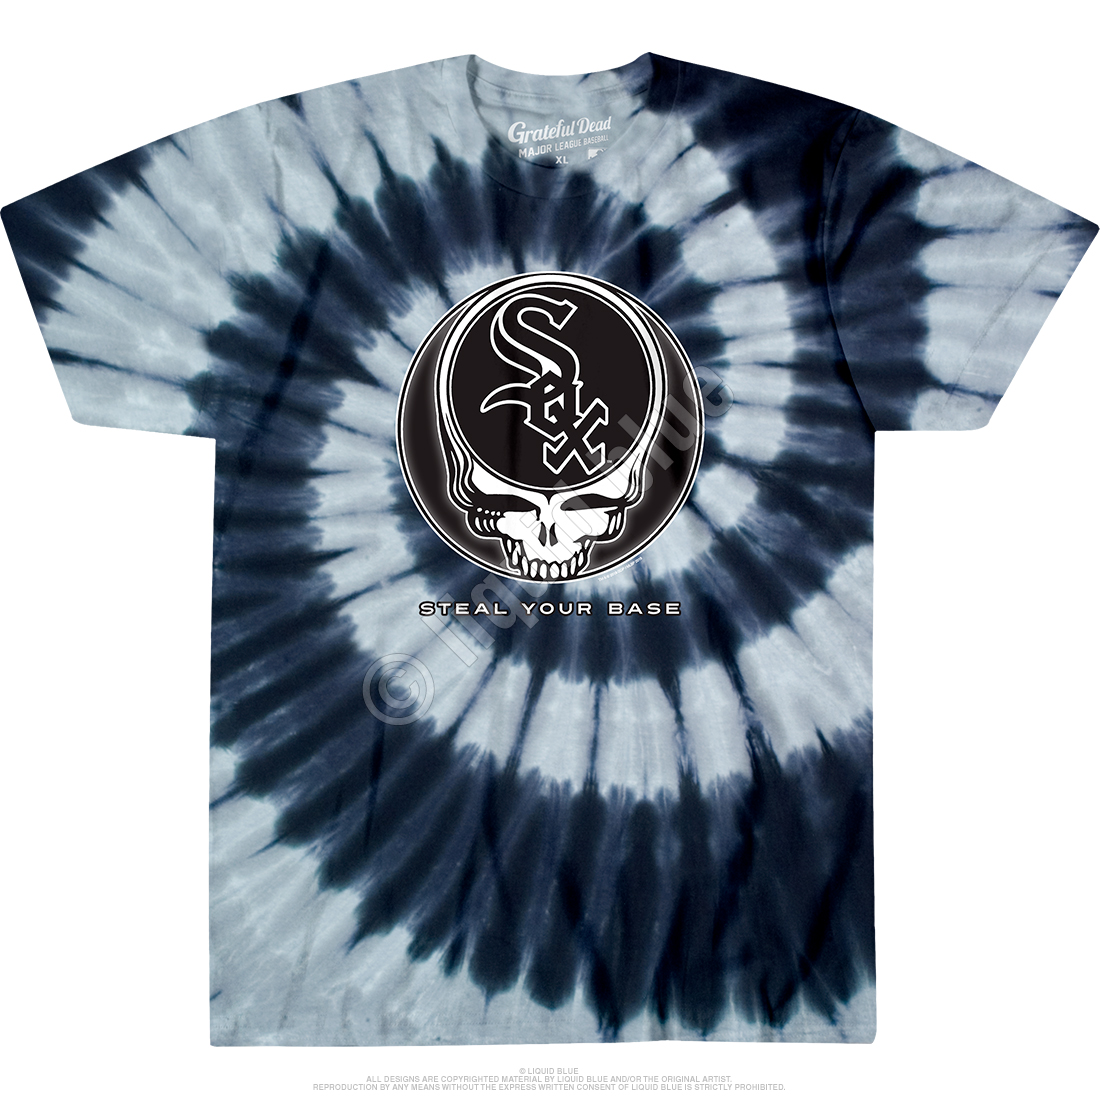 Chicago Label' Unisex Tie Dye T-Shirt